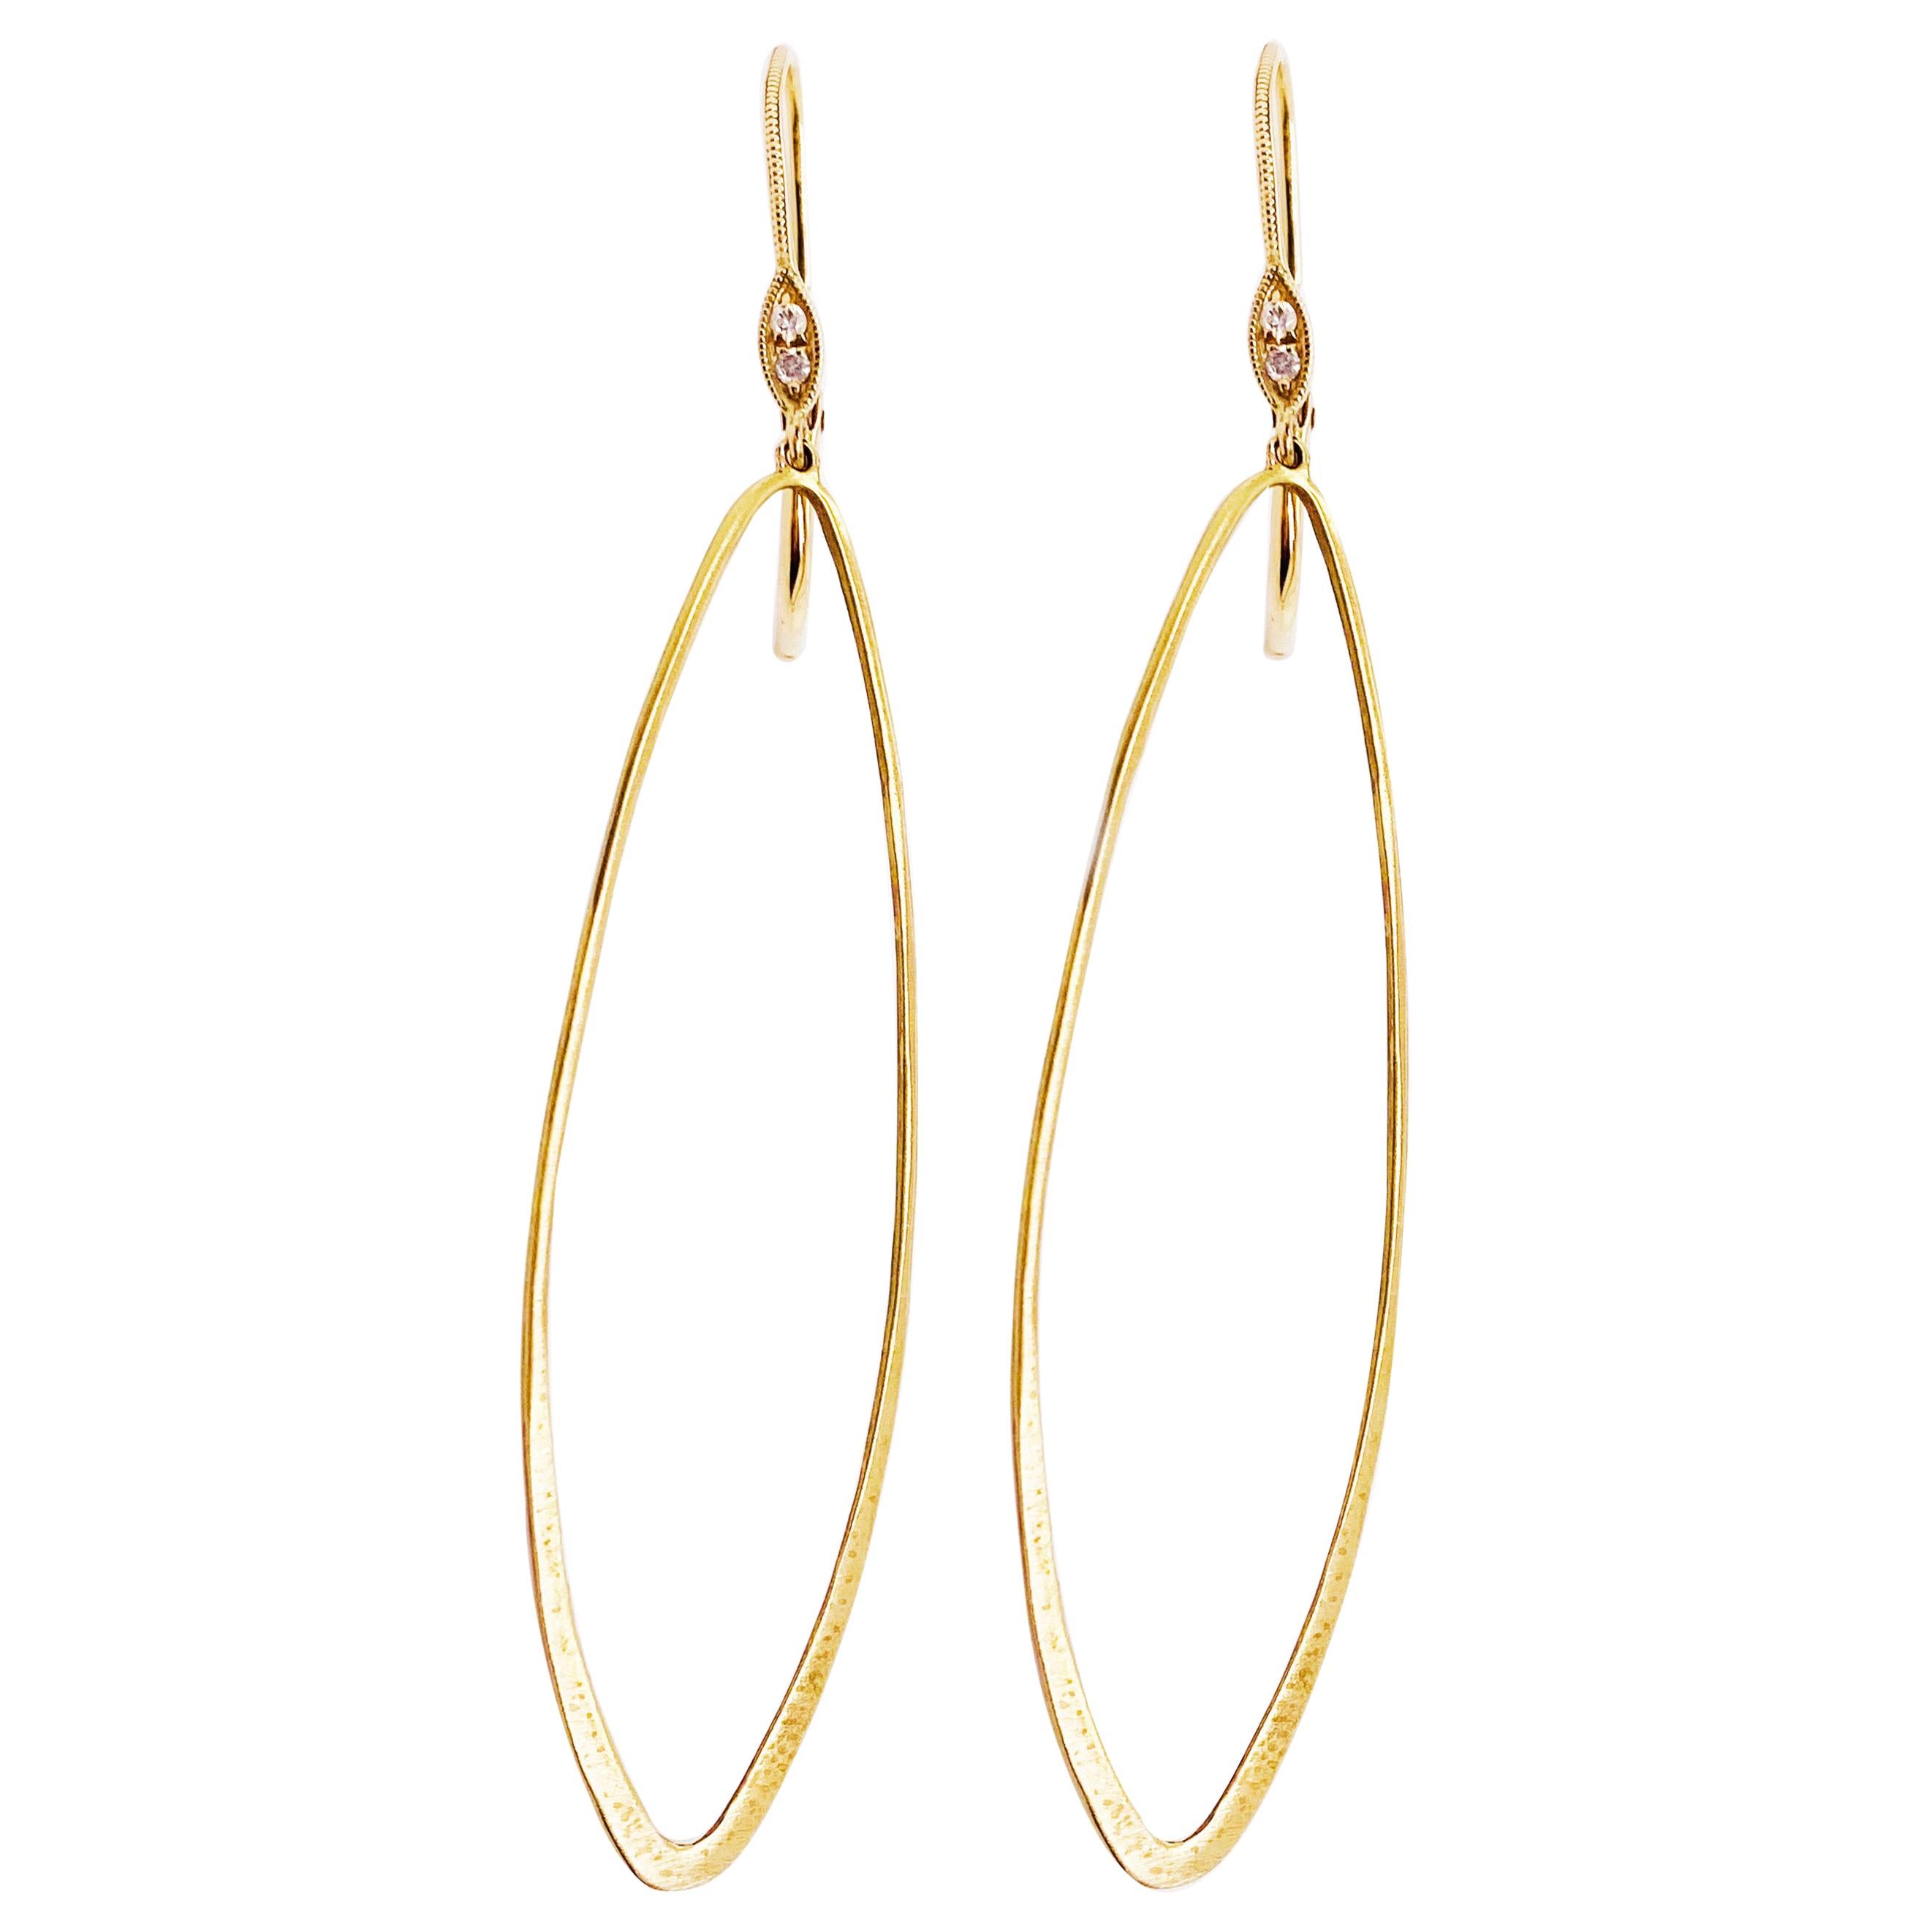 Designer Dangle Earrings, 14 Karat Gold Brush Diamond Design, Oval